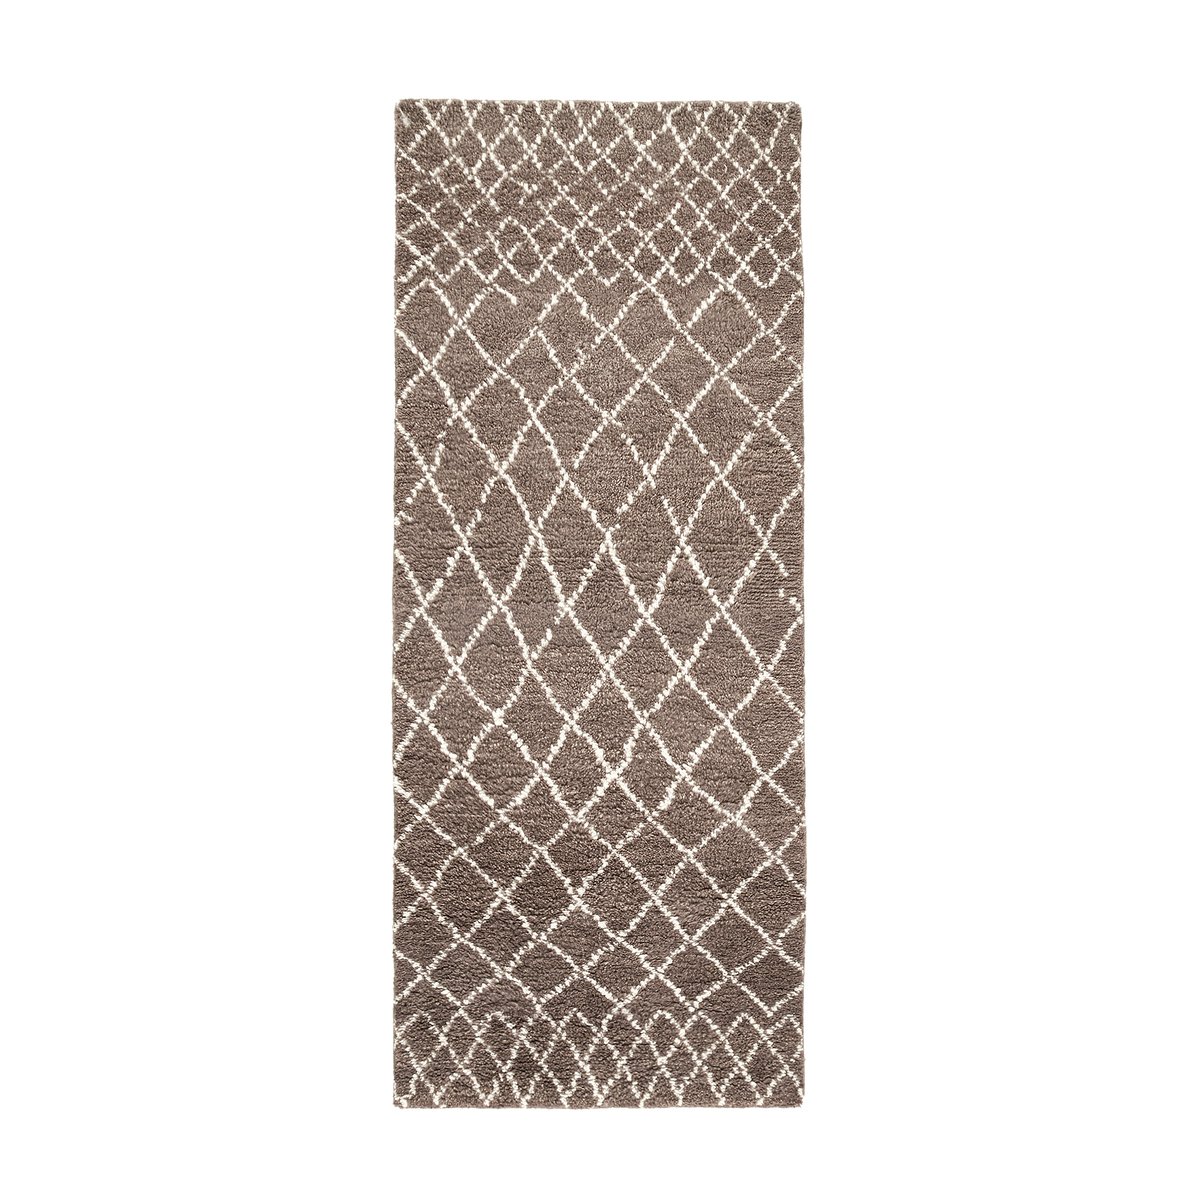 фото Дорожка ковровая для коридора в берберском стиле из шерсти, runfred am.pm